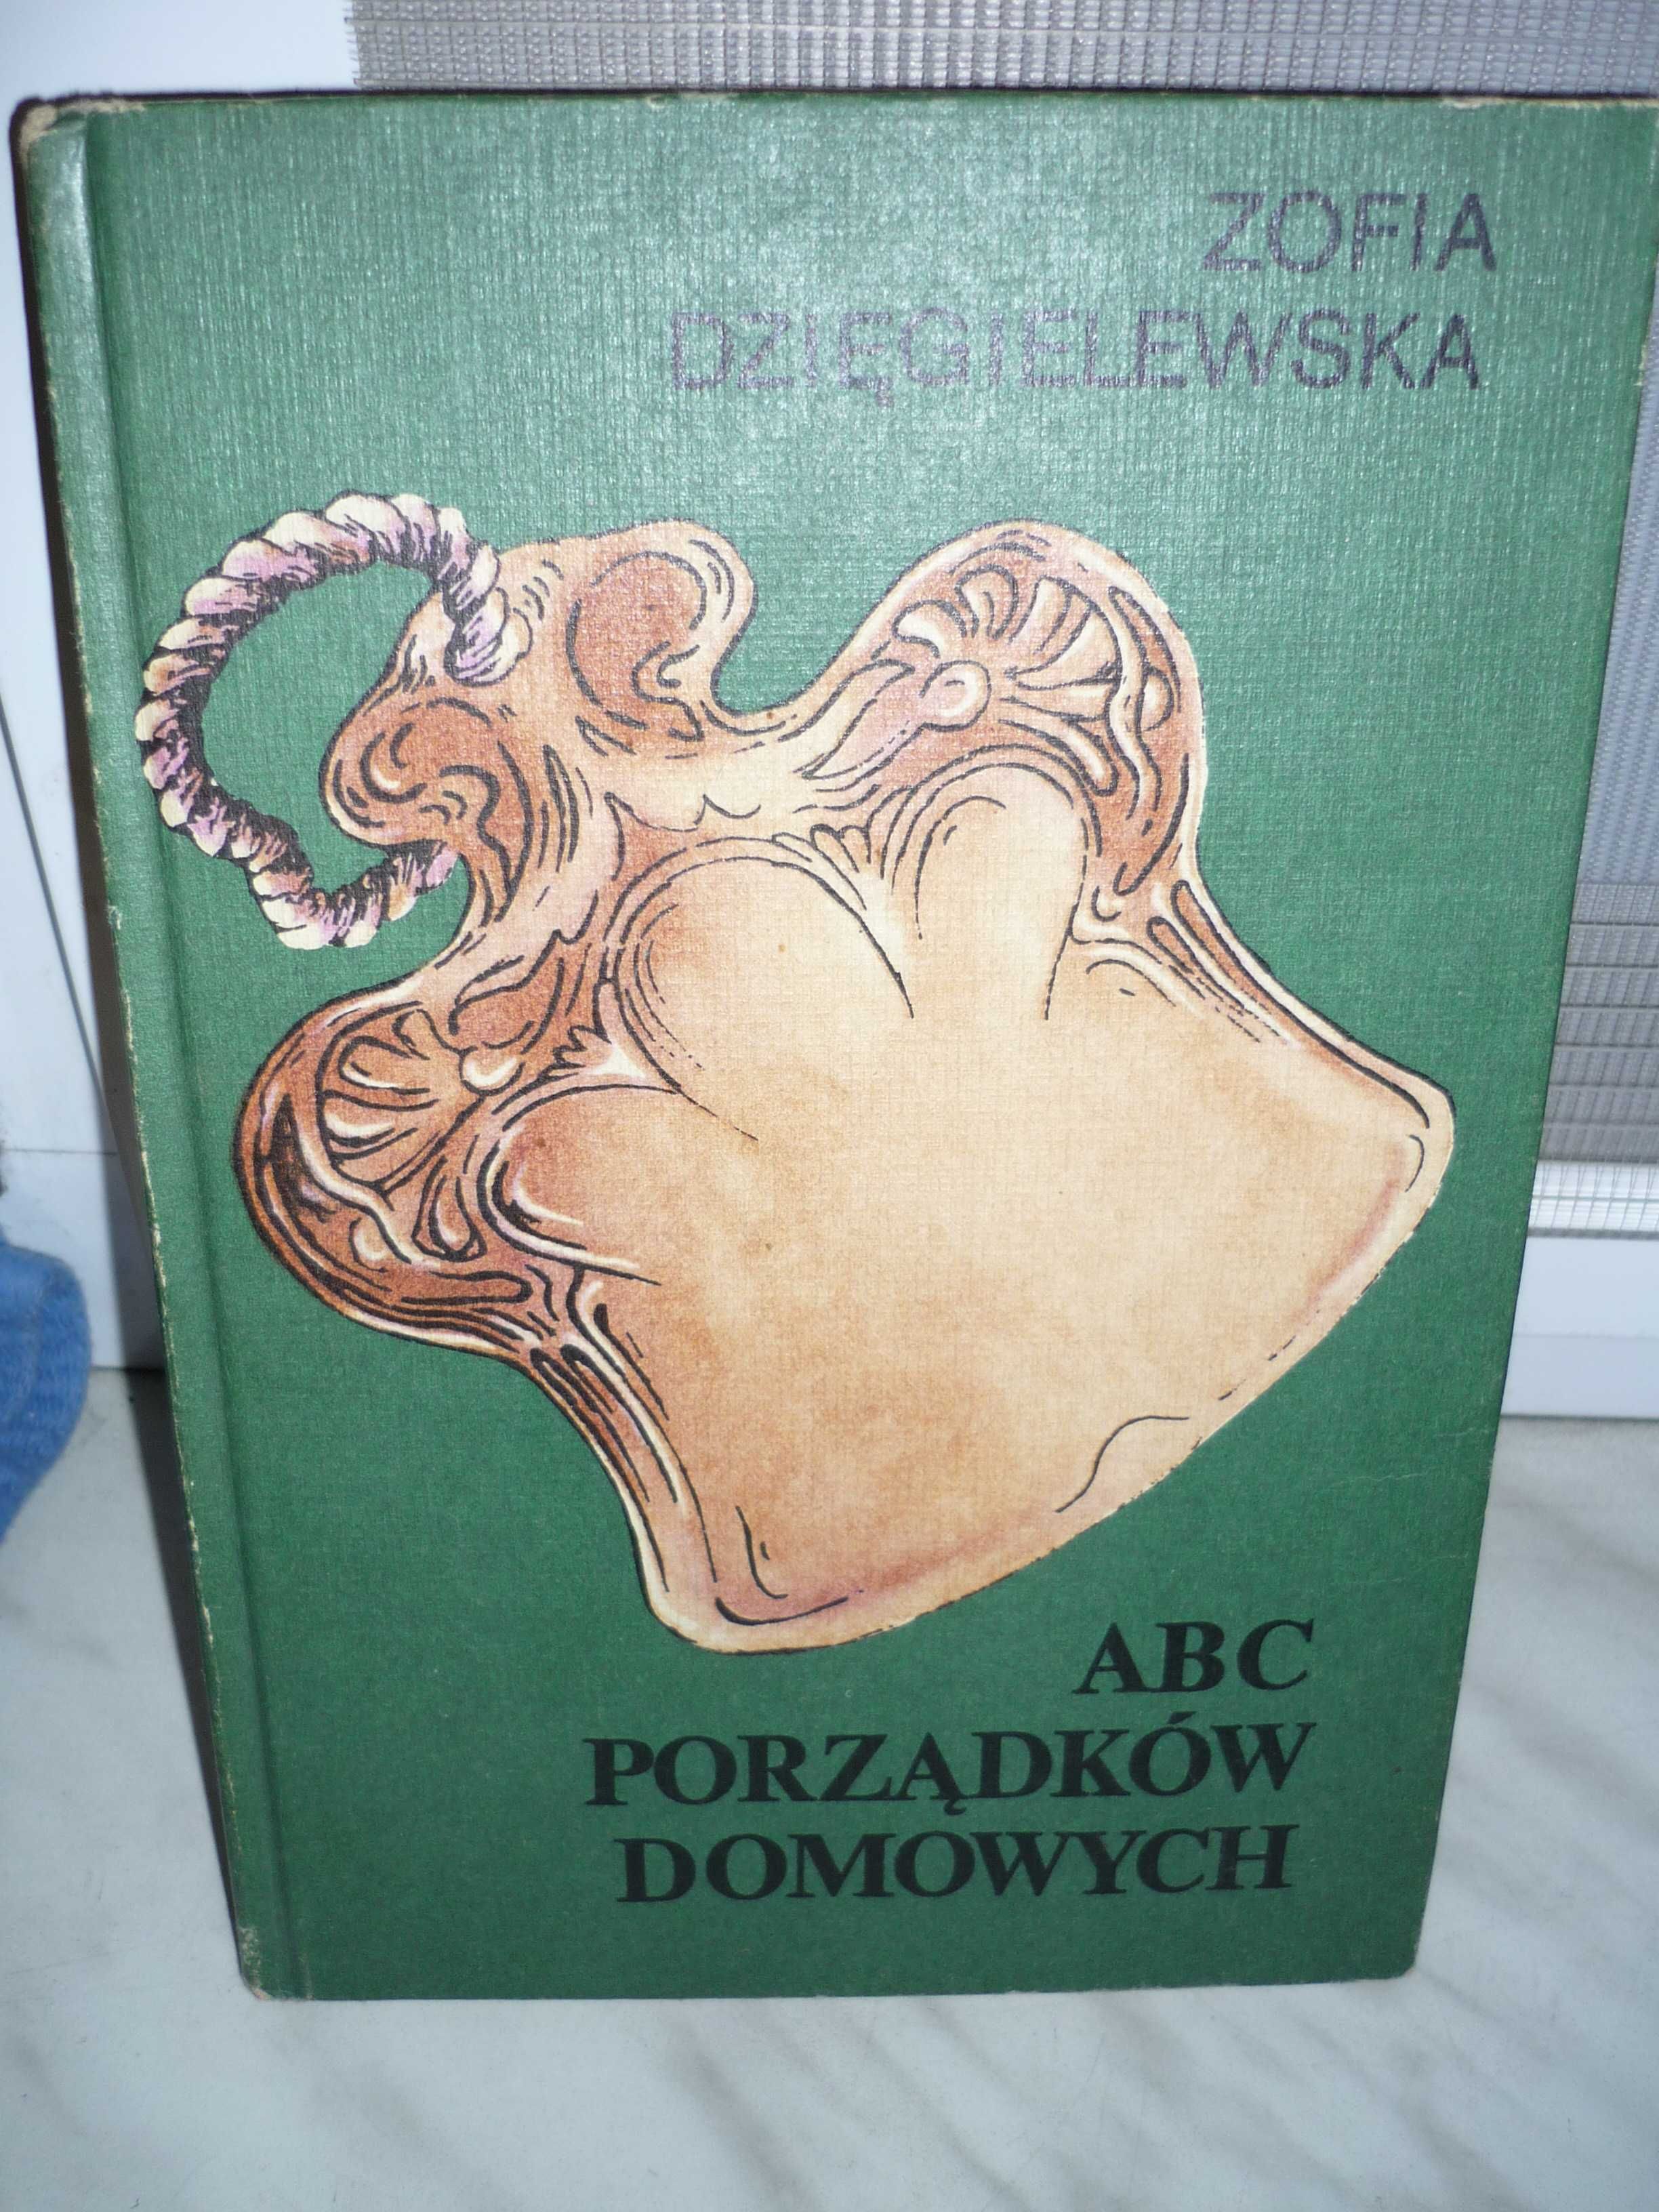 ABC porządków domowych , Zofia Dzięgielewska.